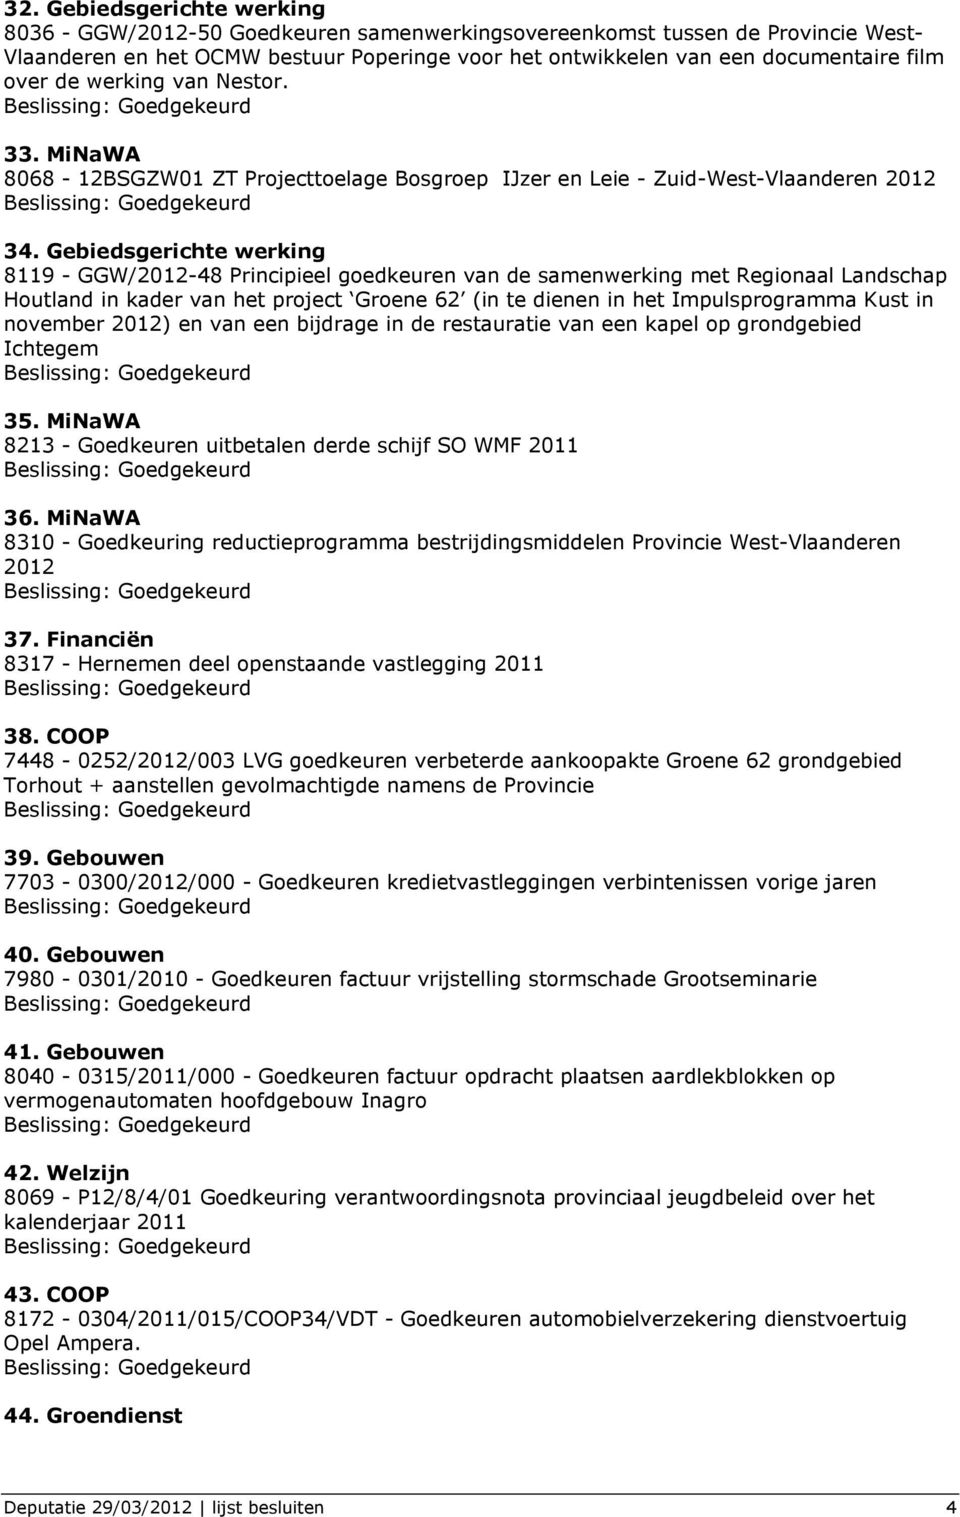 Gebiedsgerichte werking 8119 - GGW/2012-48 Principieel goedkeuren van de samenwerking met Regionaal Landschap Houtland in kader van het project Groene 62 (in te dienen in het Impulsprogramma Kust in